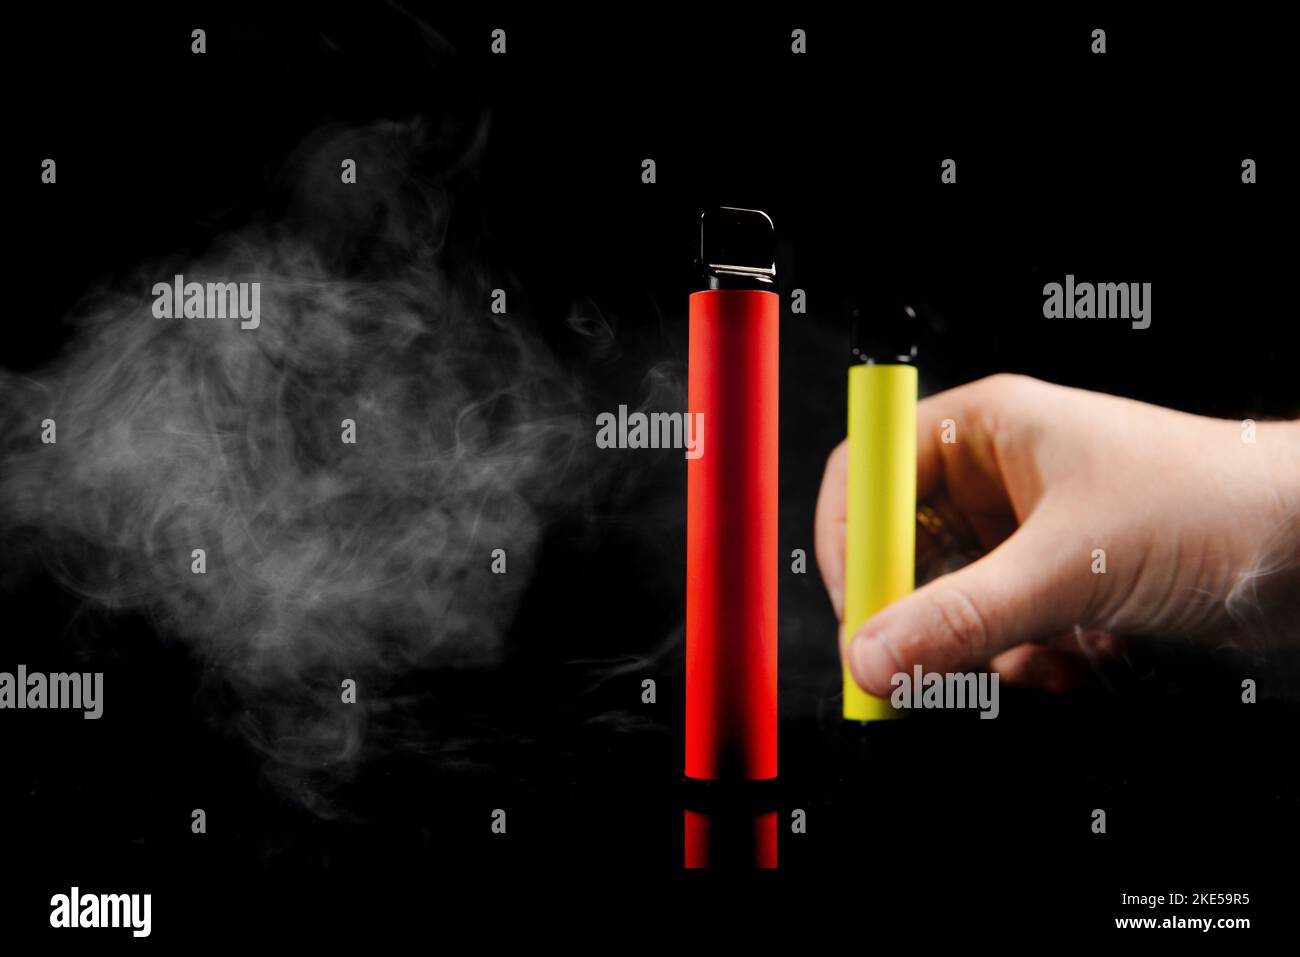 Sigarette elettroniche usa e getta di diversi gusti in mano su sfondo giallo. Il concetto di fumo moderno, vaping e nicotina. Foto Stock